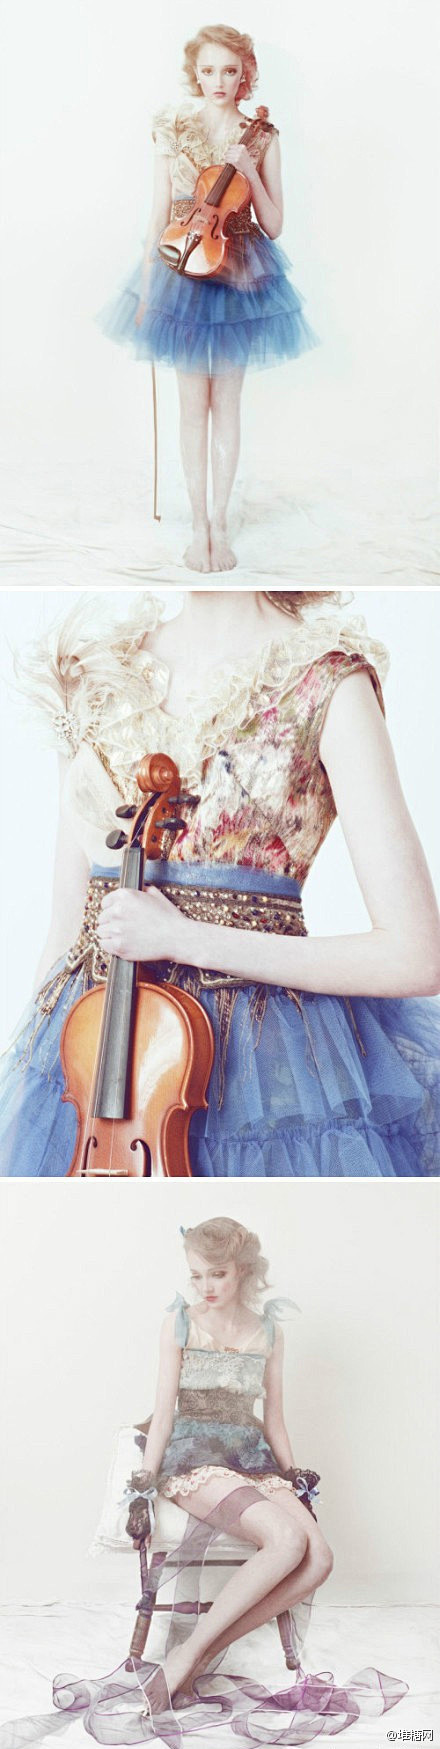 拉小提琴的少女。